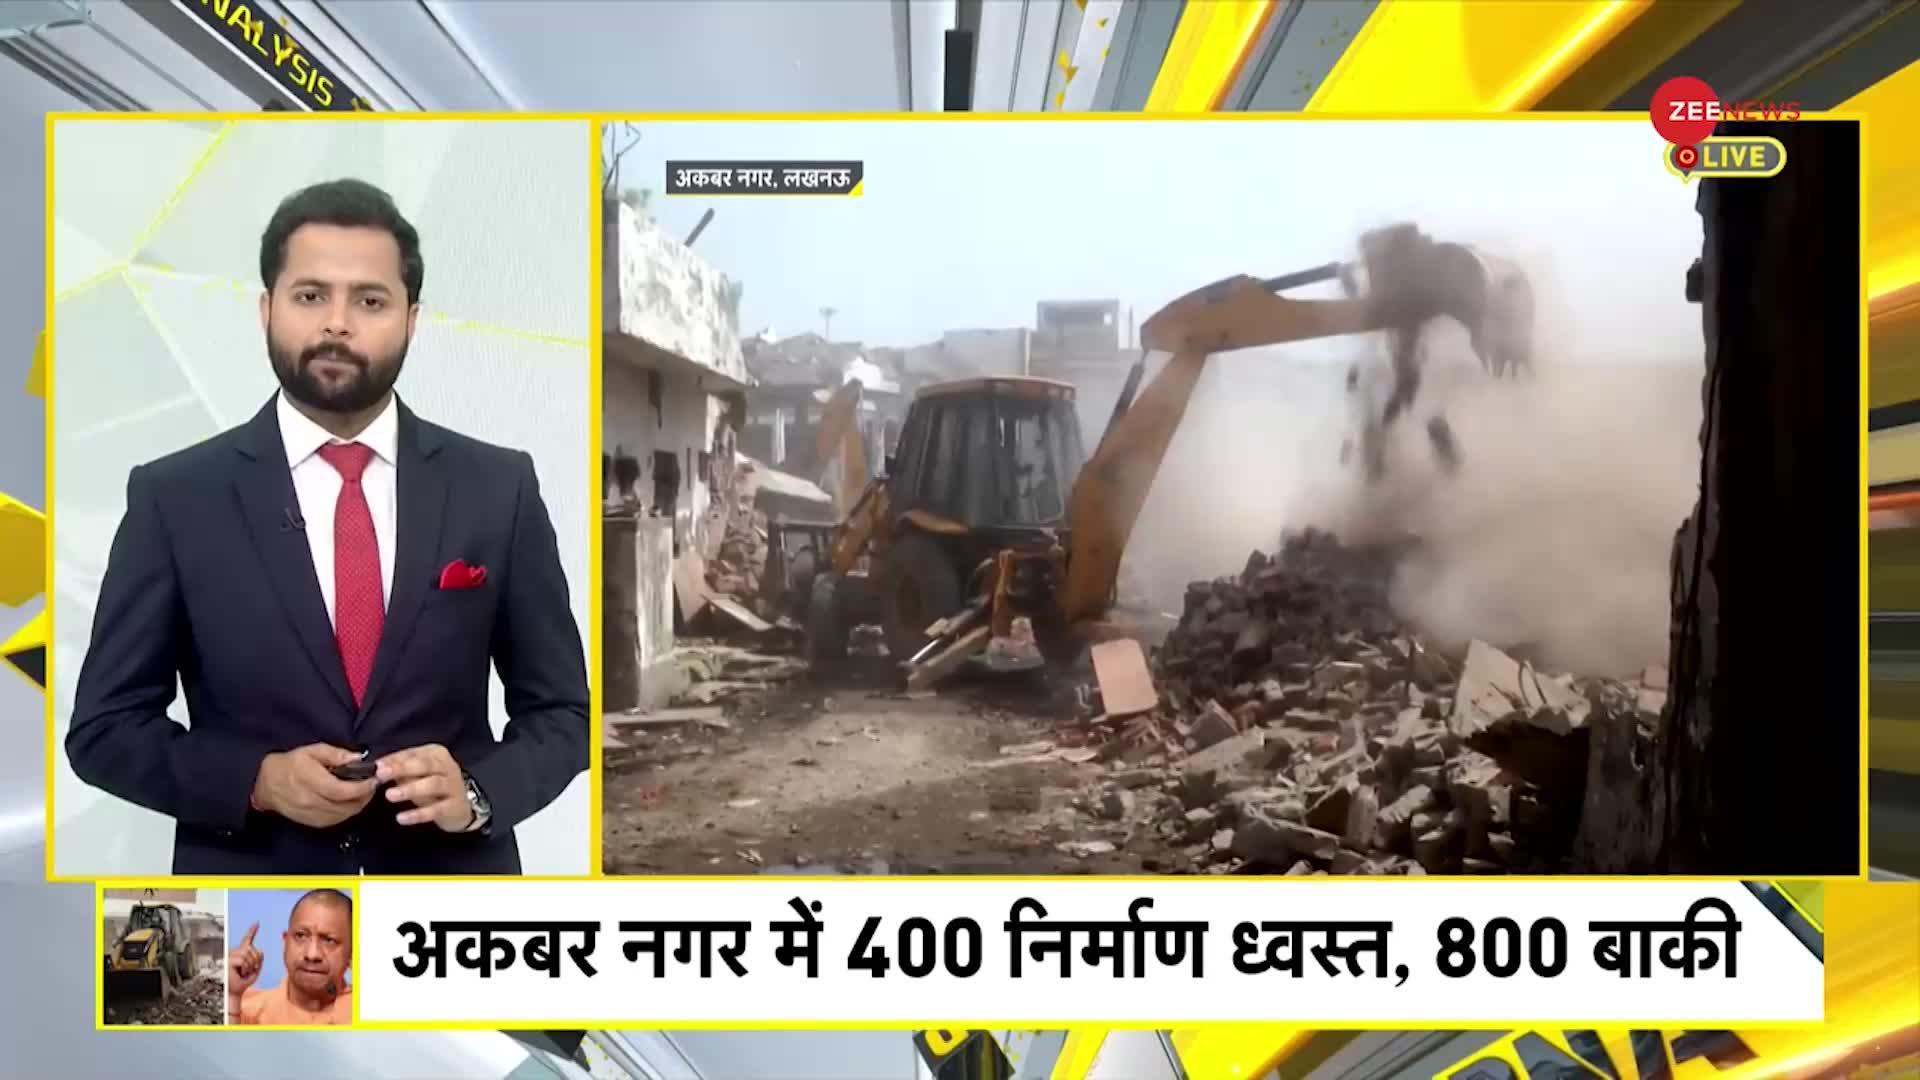 लखनऊ के अकबरनगर में तोड़े गए 1200 अवैध मकान